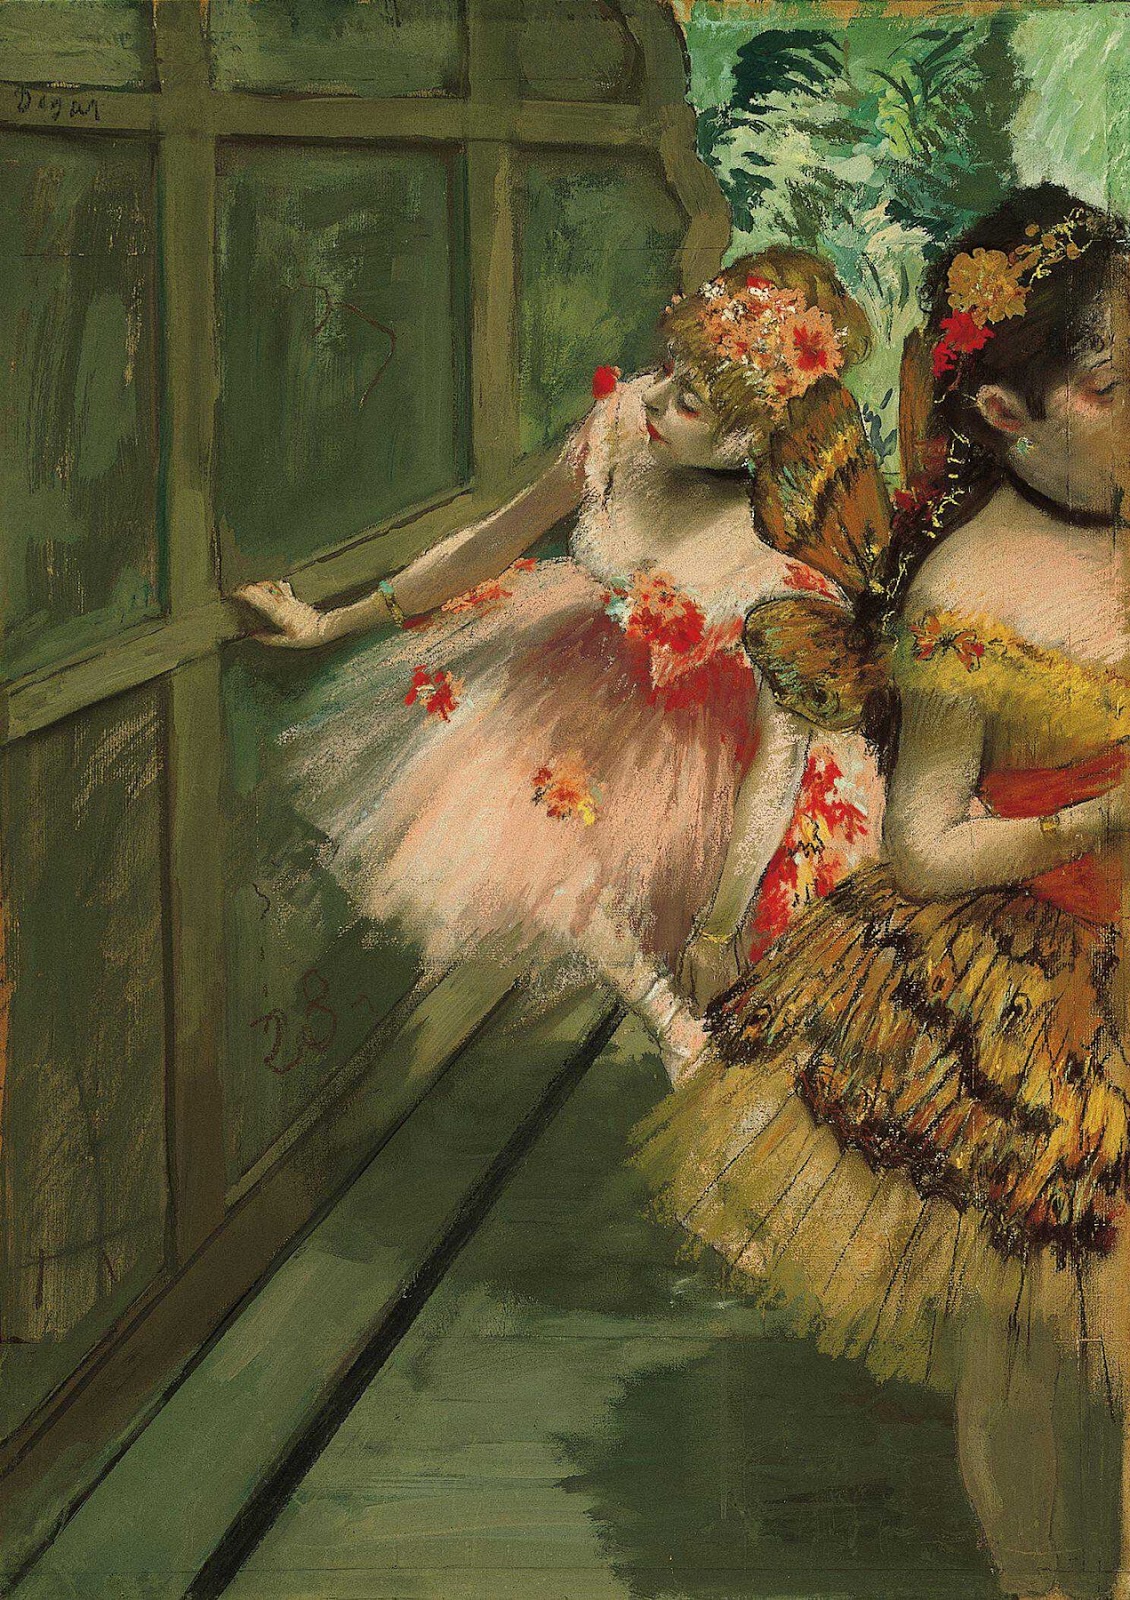 Tancerze w skrzydłach by Edgar Degas - 1876-1878 - 69.2 x 50.2 cm 